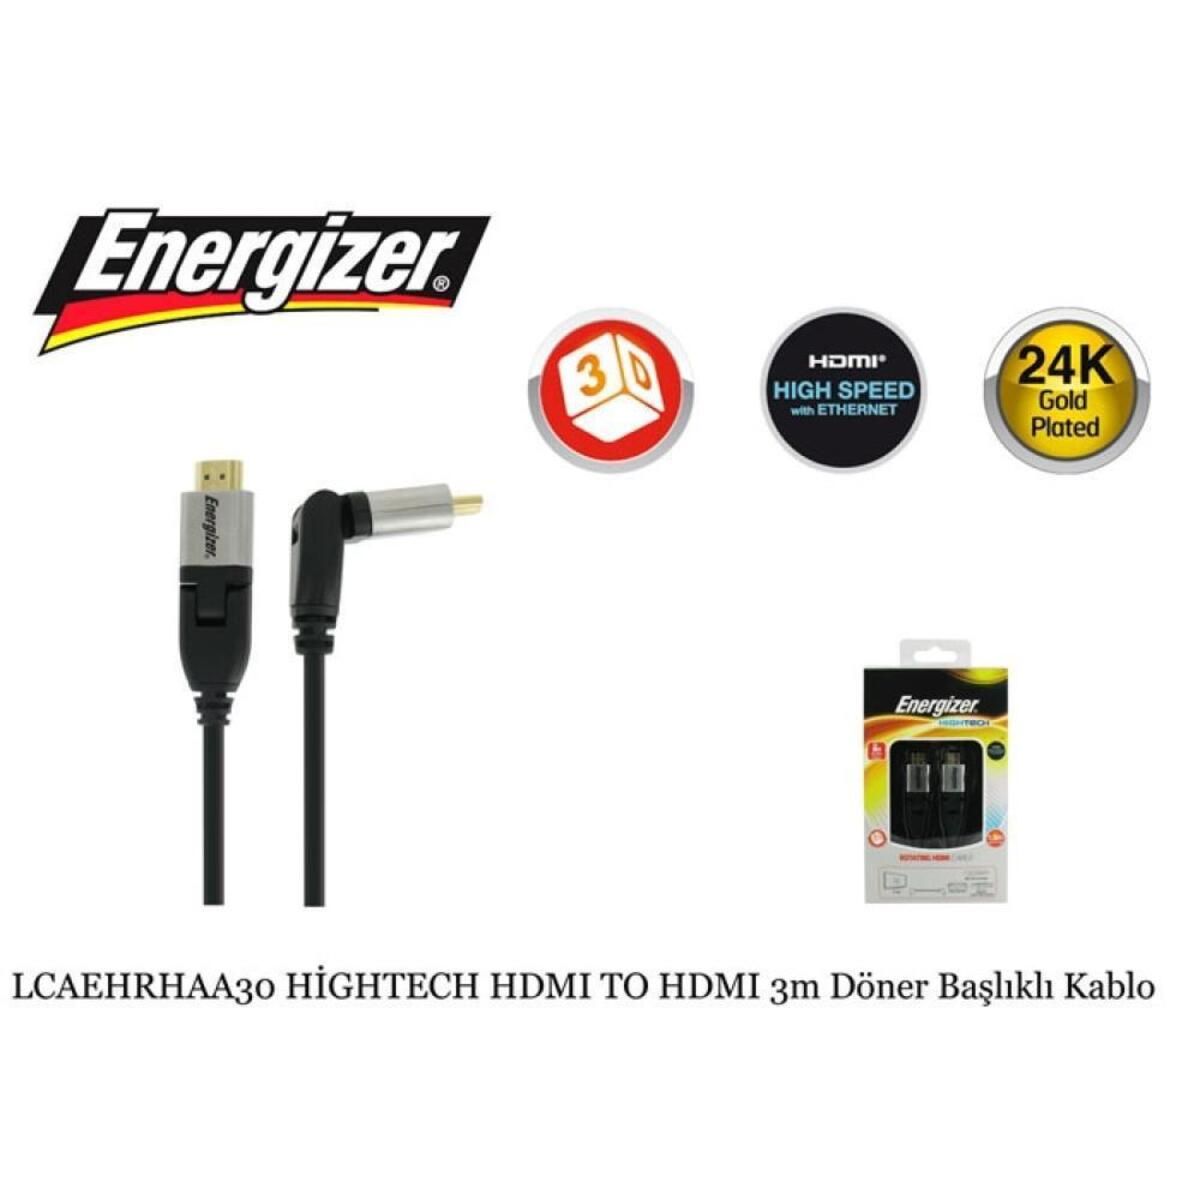 Energizer Lcaehrhaa30 Hdmı Kablo Hıgh Tech 3 Mt Döner Başlıklı